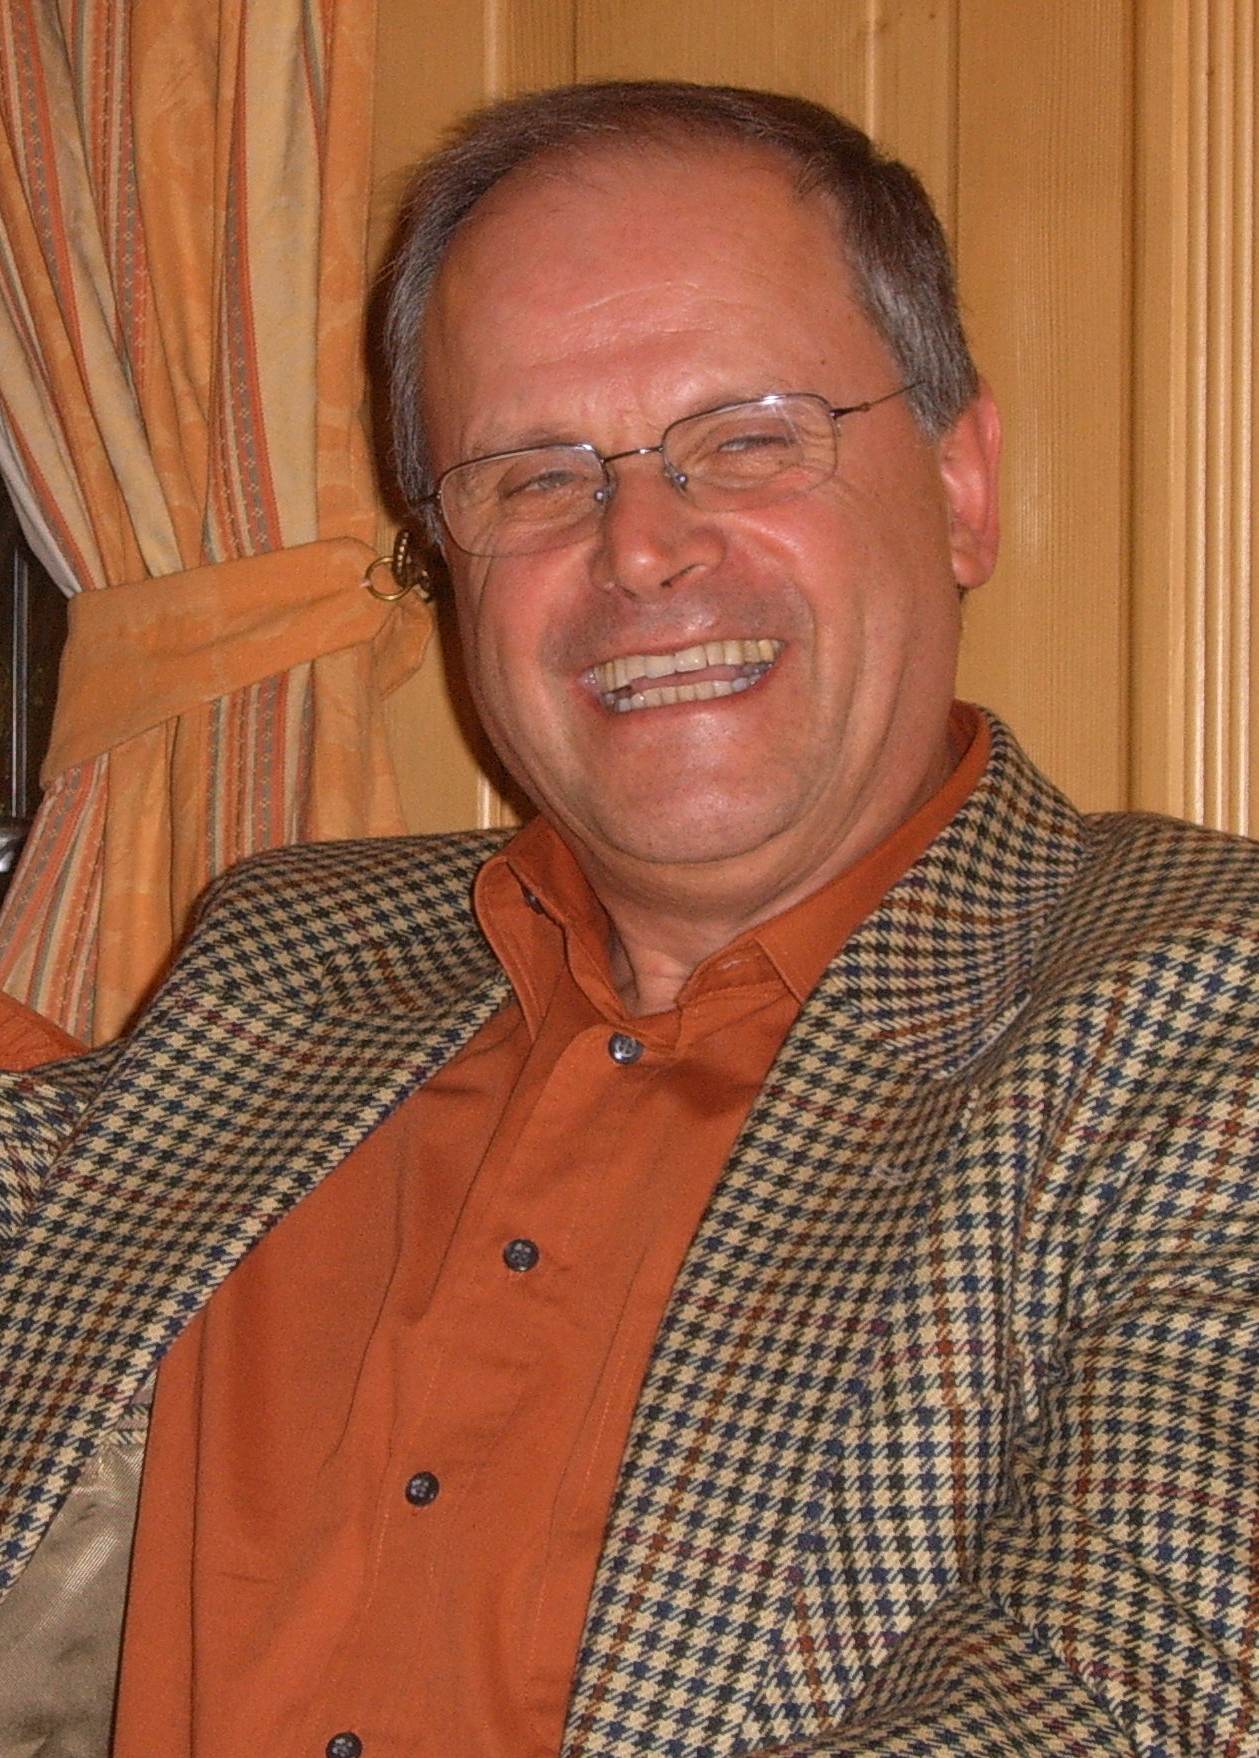 Erwin Bartel